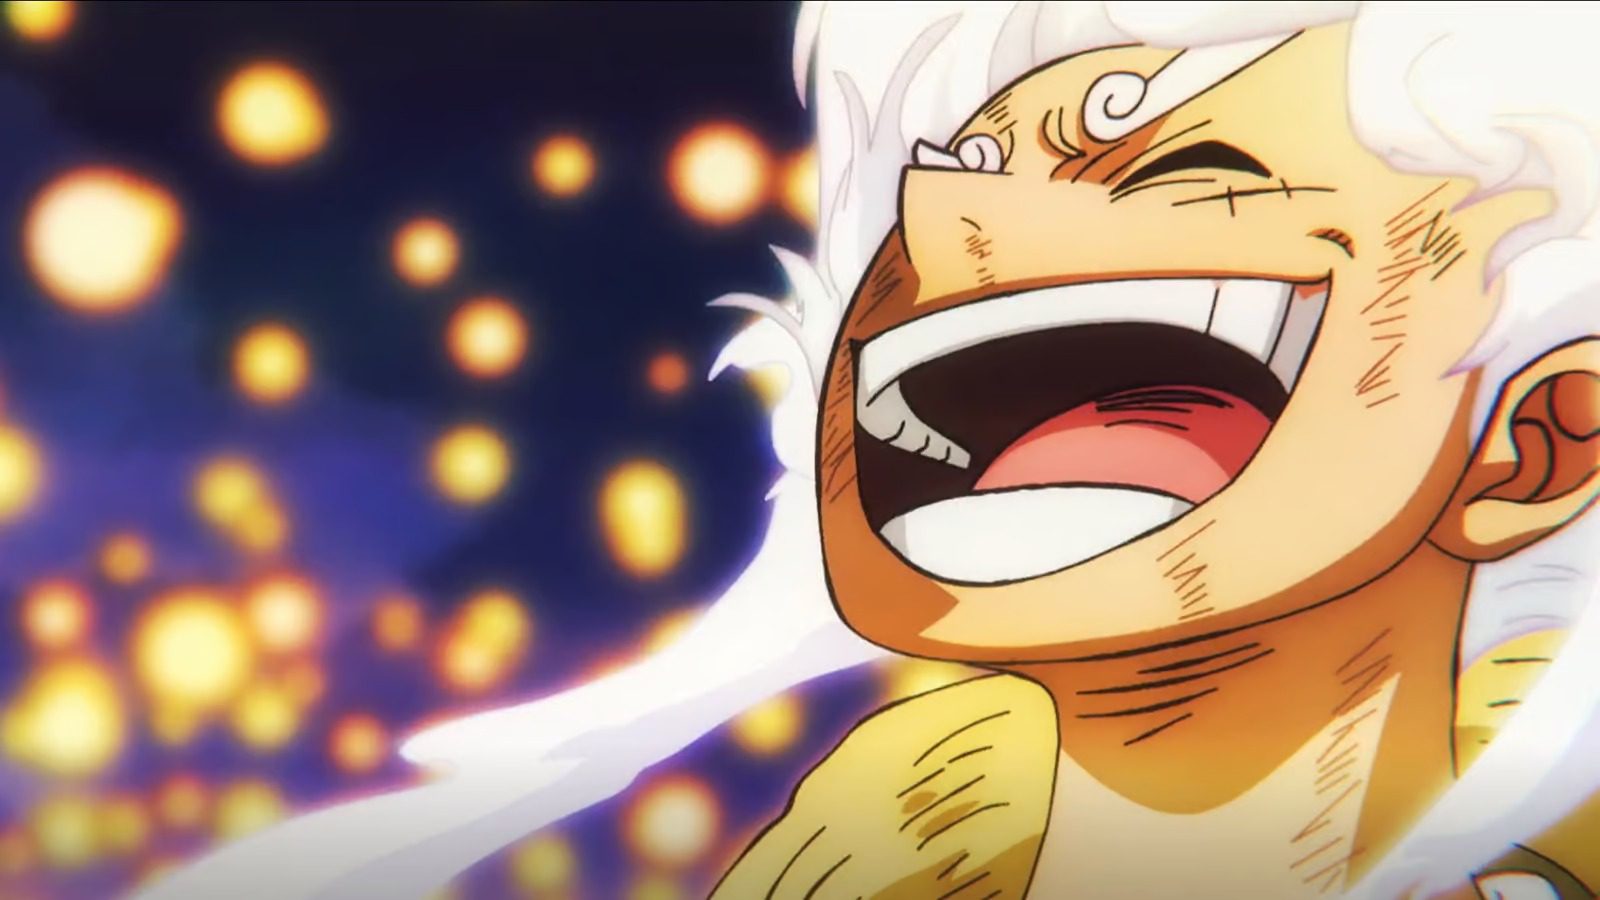 One Piece: episódio 1.000 do anime tem novidades reveladas; veja